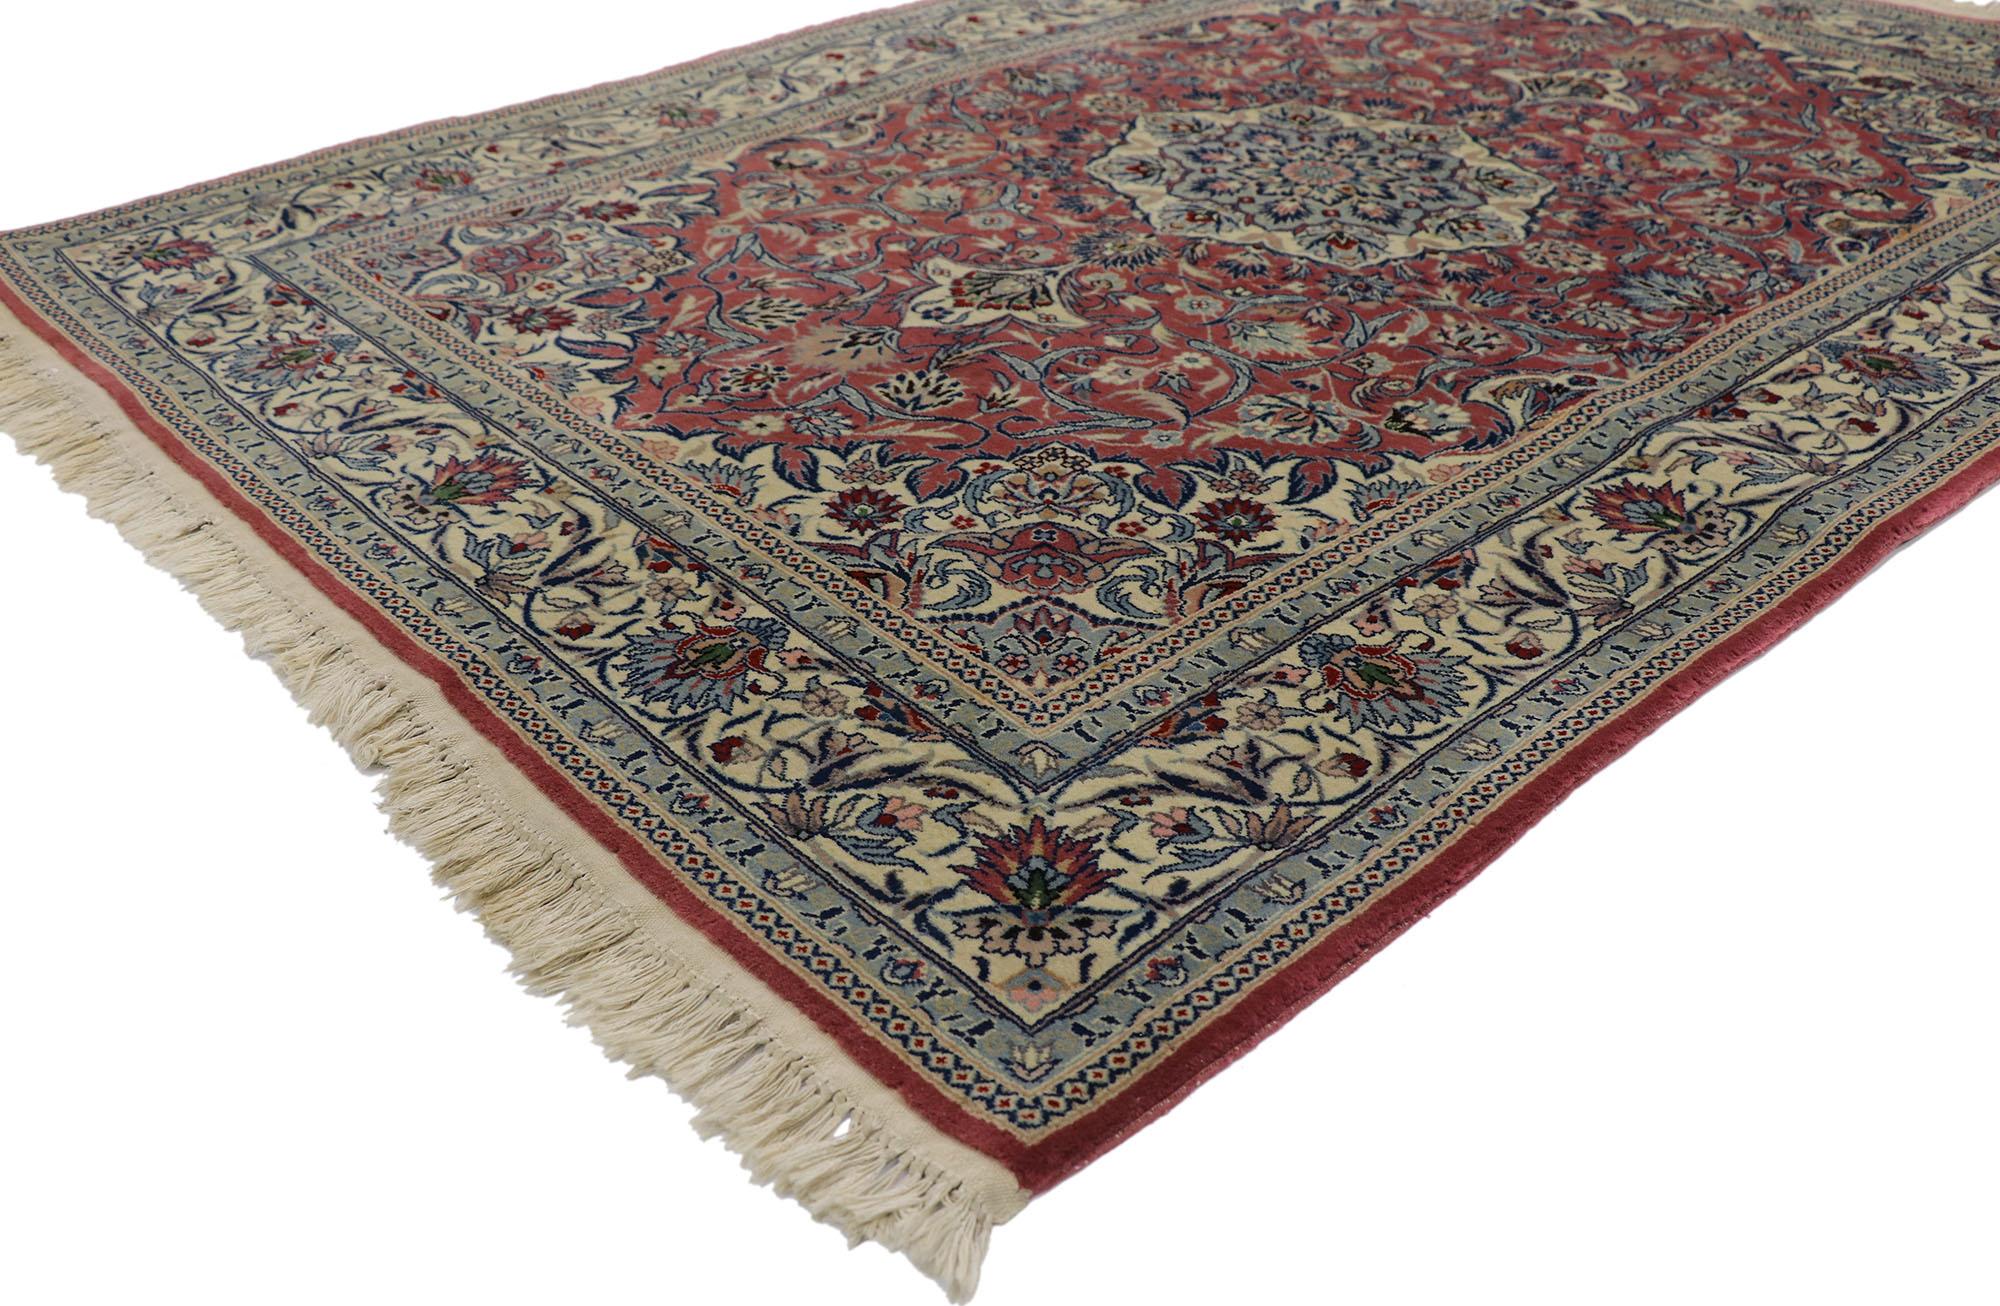 78137 Tapis chinois vintage Tabriz de style traditionnel, 04'02 x 06'02.
Emanant d'un style traditionnel avec des détails et une texture incroyables, ce tapis Tabriz chinois noué à la main est une vision captivante de la beauté tissée. Le design